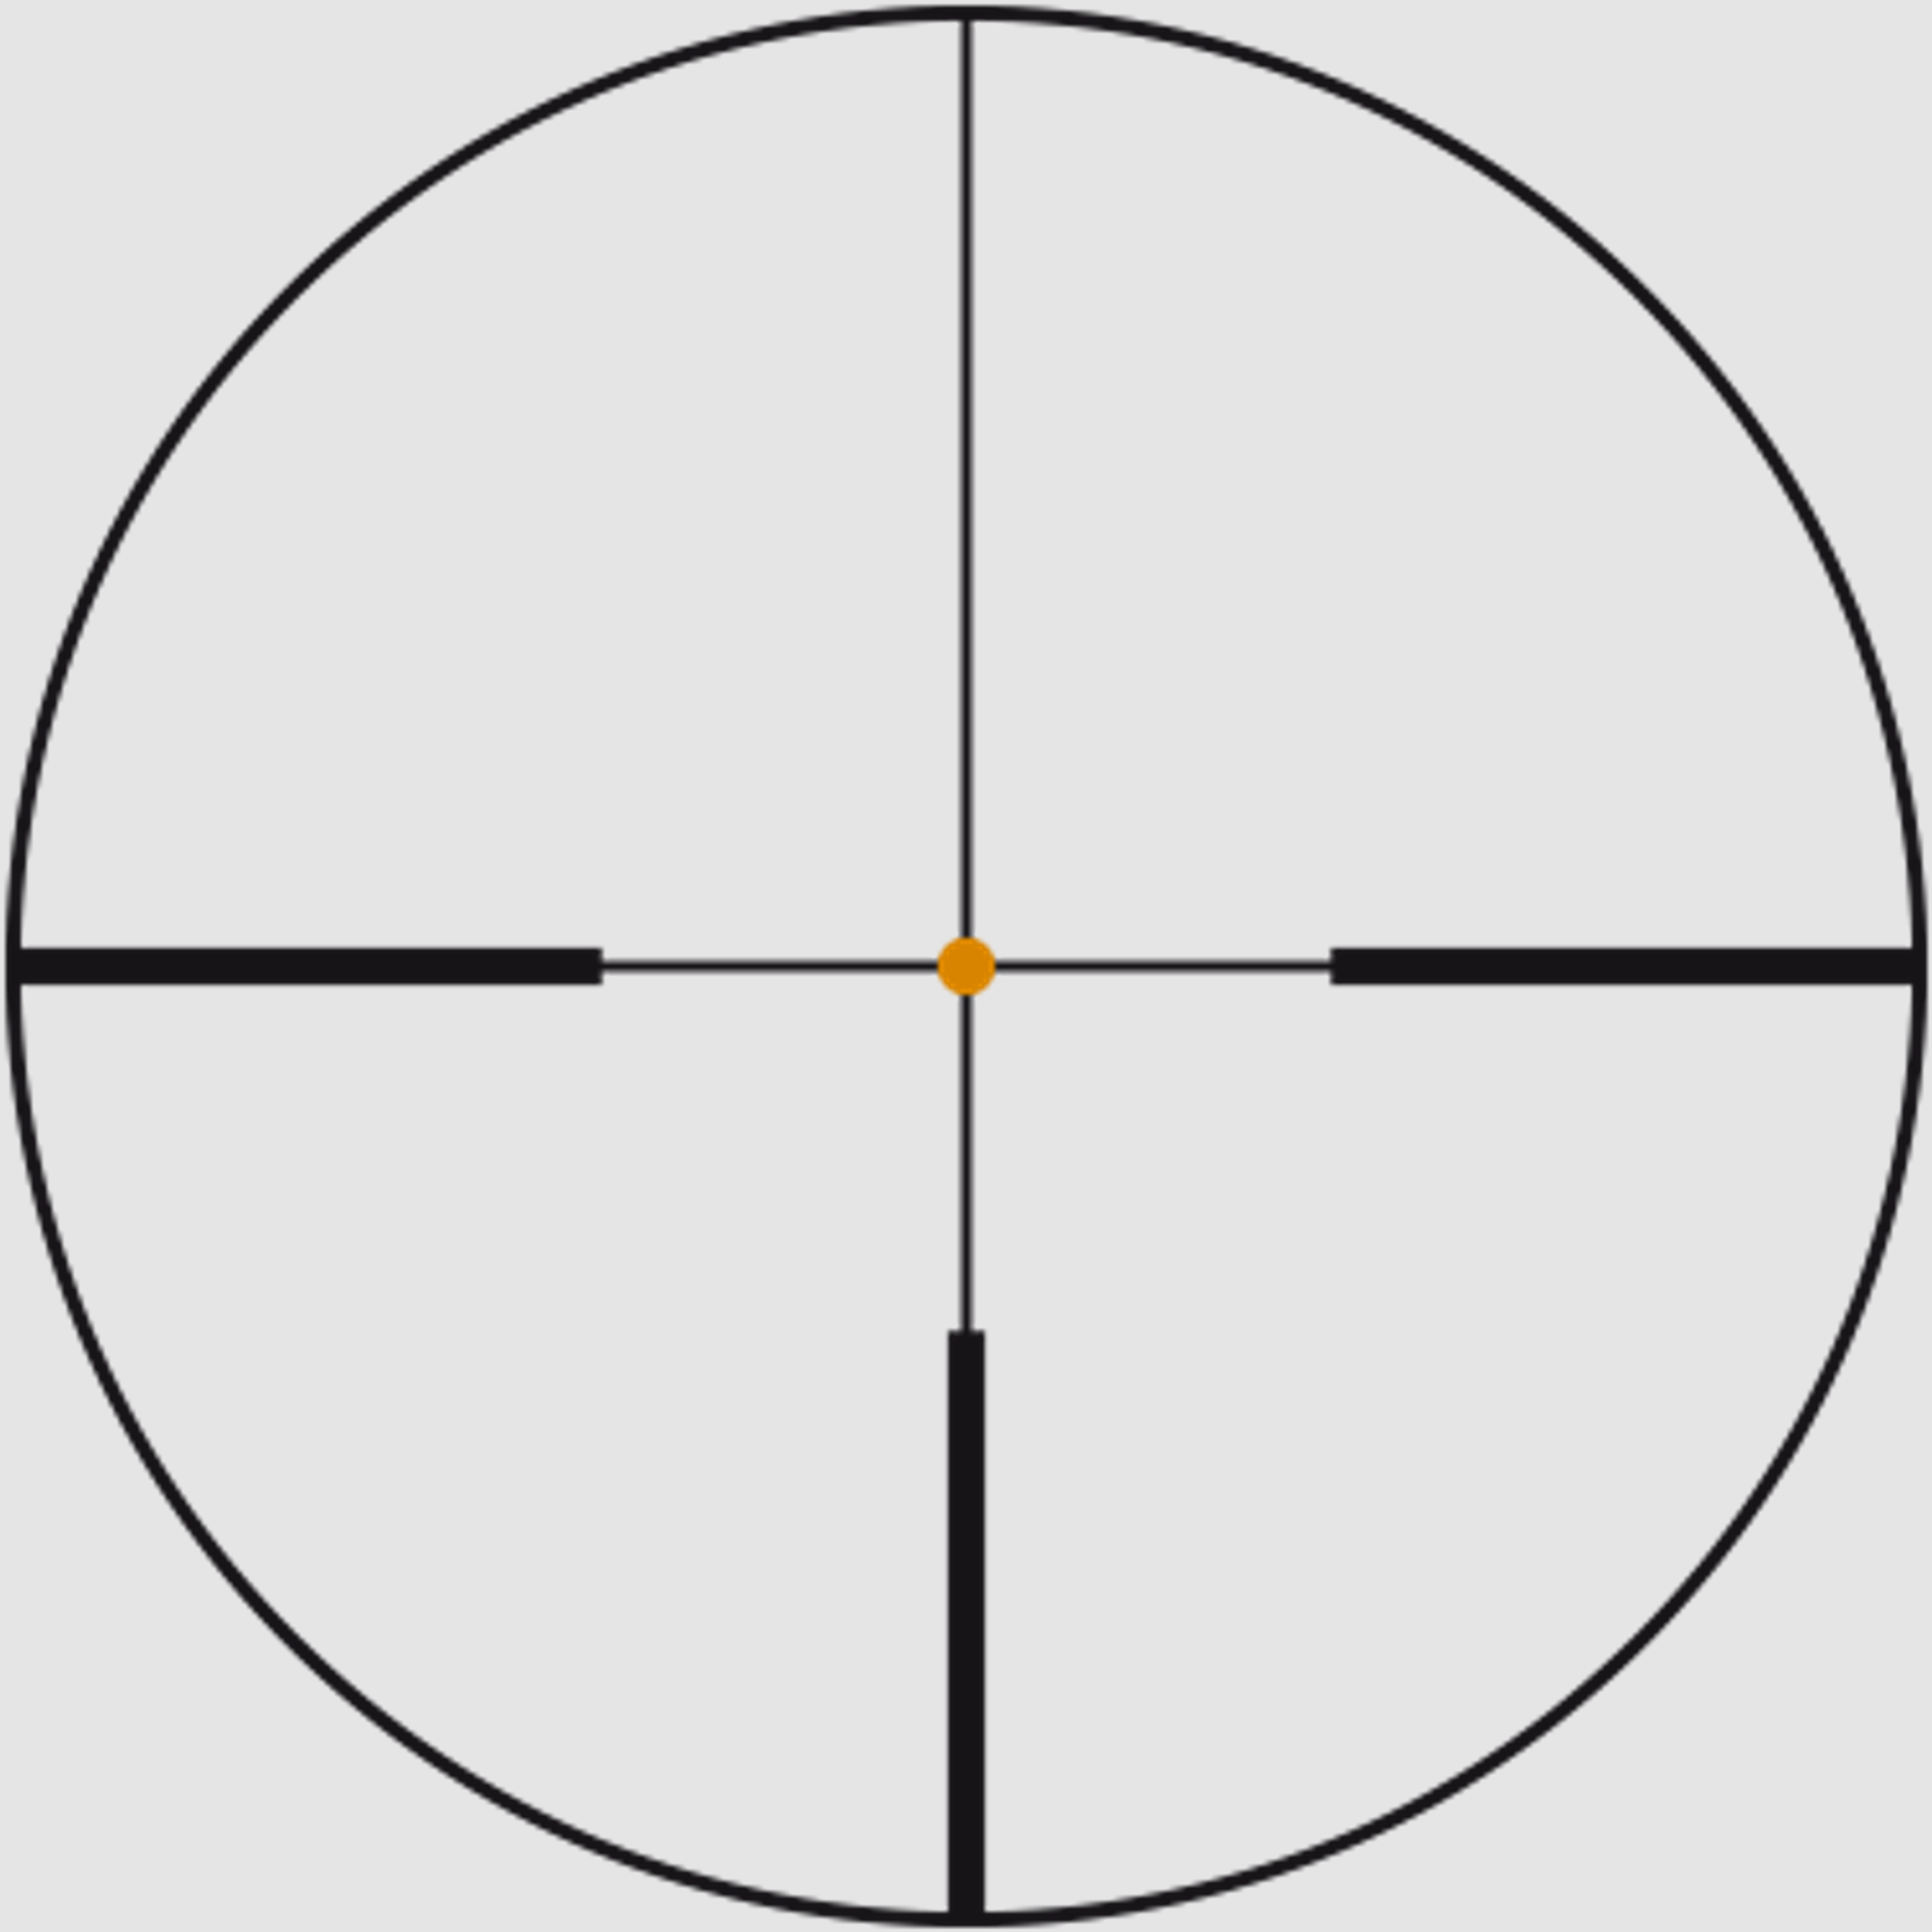 SWAROVSKI Zielfernrohr mit Leuchtabsehen 3,5-28x50 P Z8i SR Abs. 4A-I/4W-I